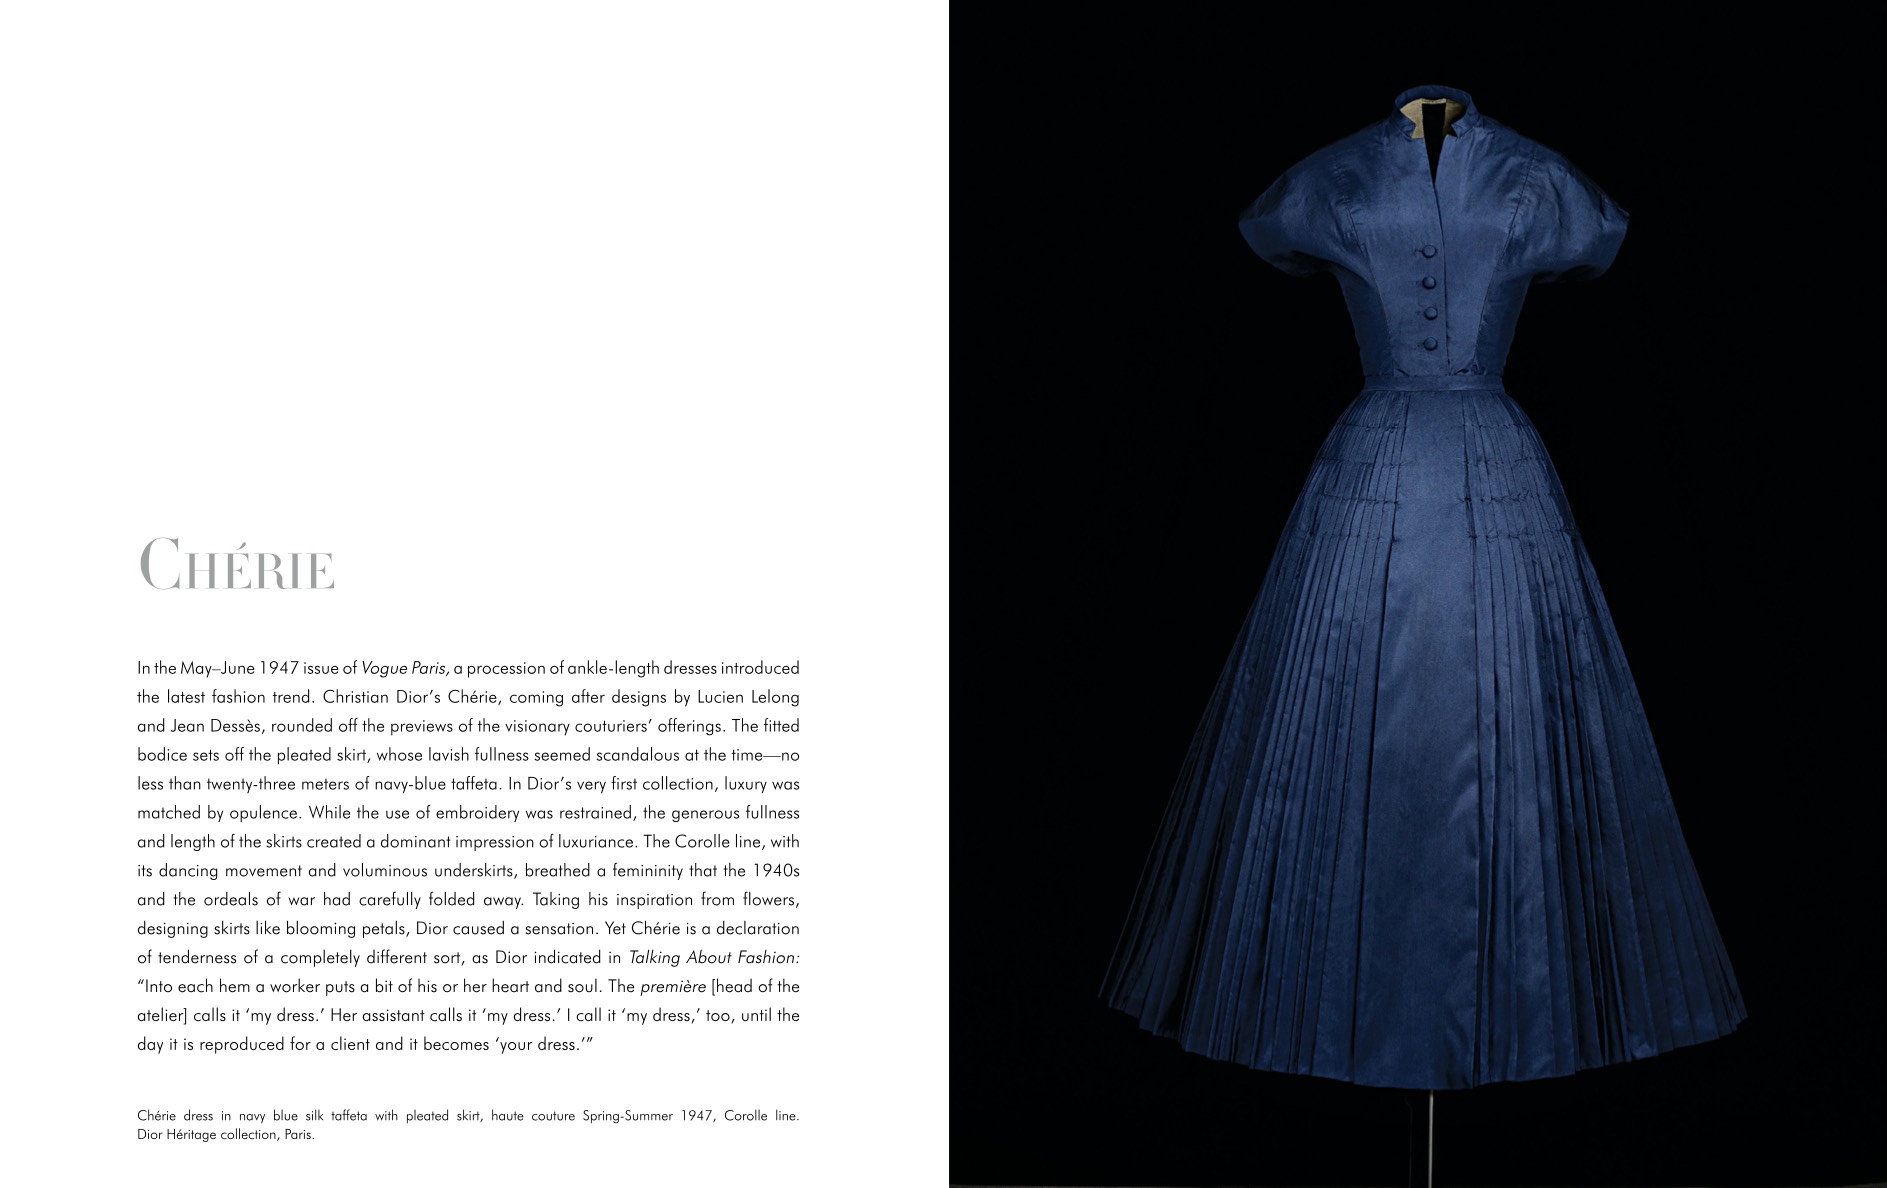 Dior опублікували онлайн-версію книги про творчість Крістіана Діора